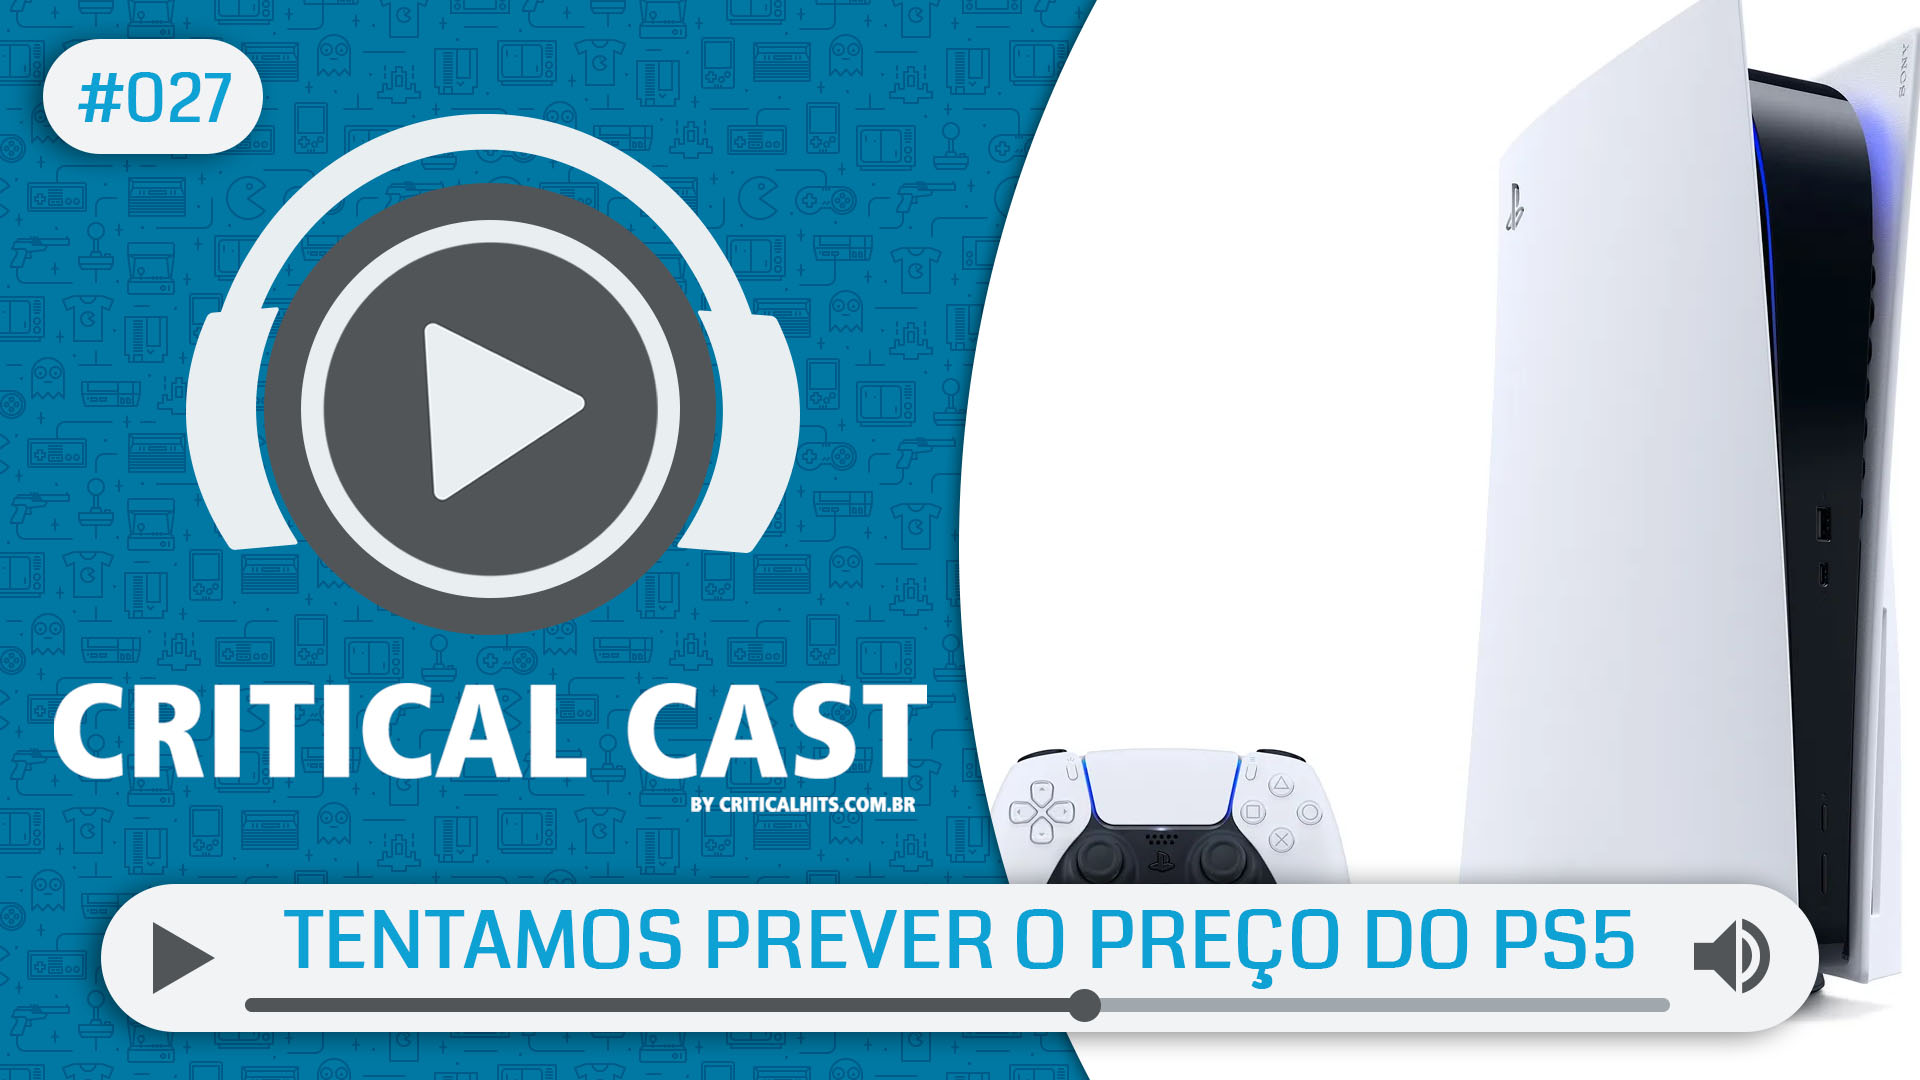 Critical Cast #027 - Tentamos prever o preço do PS5 (e falhamos)